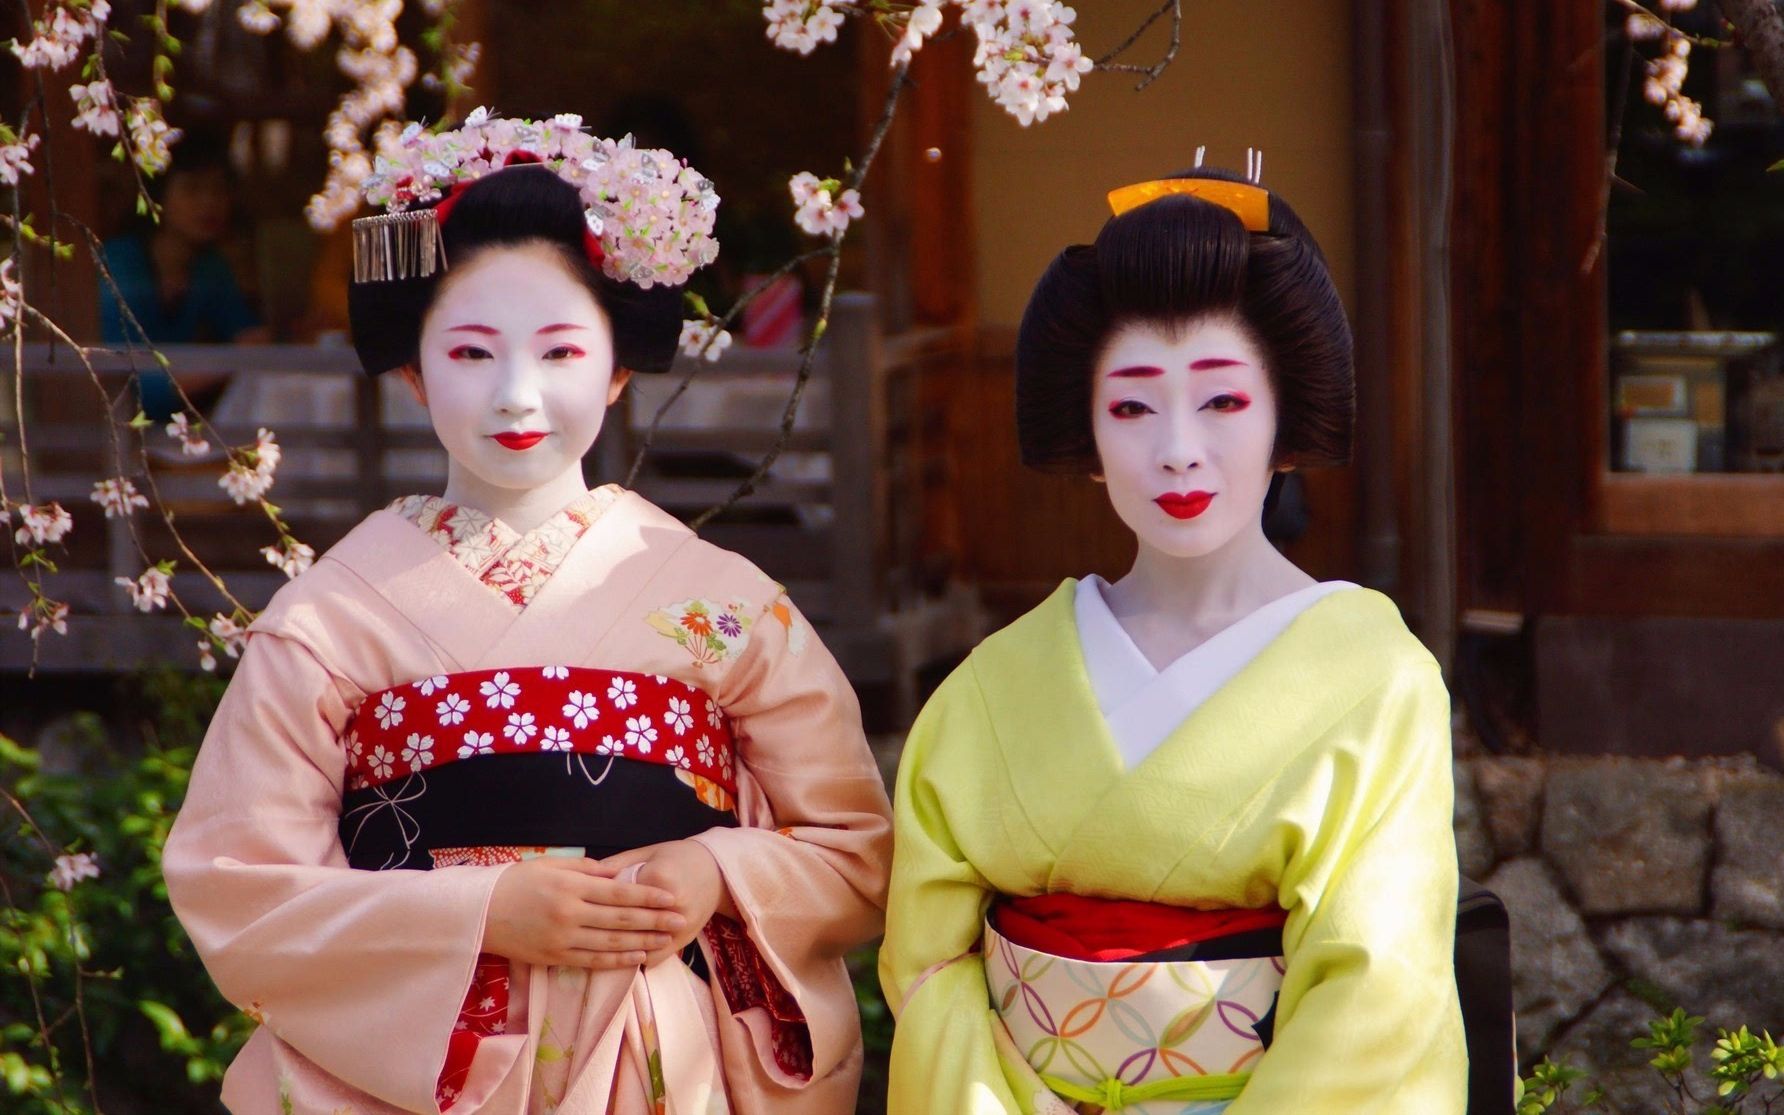 我们都知道日本有艺伎和舞伎,那么日本艺伎和舞伎到底有啥区别?